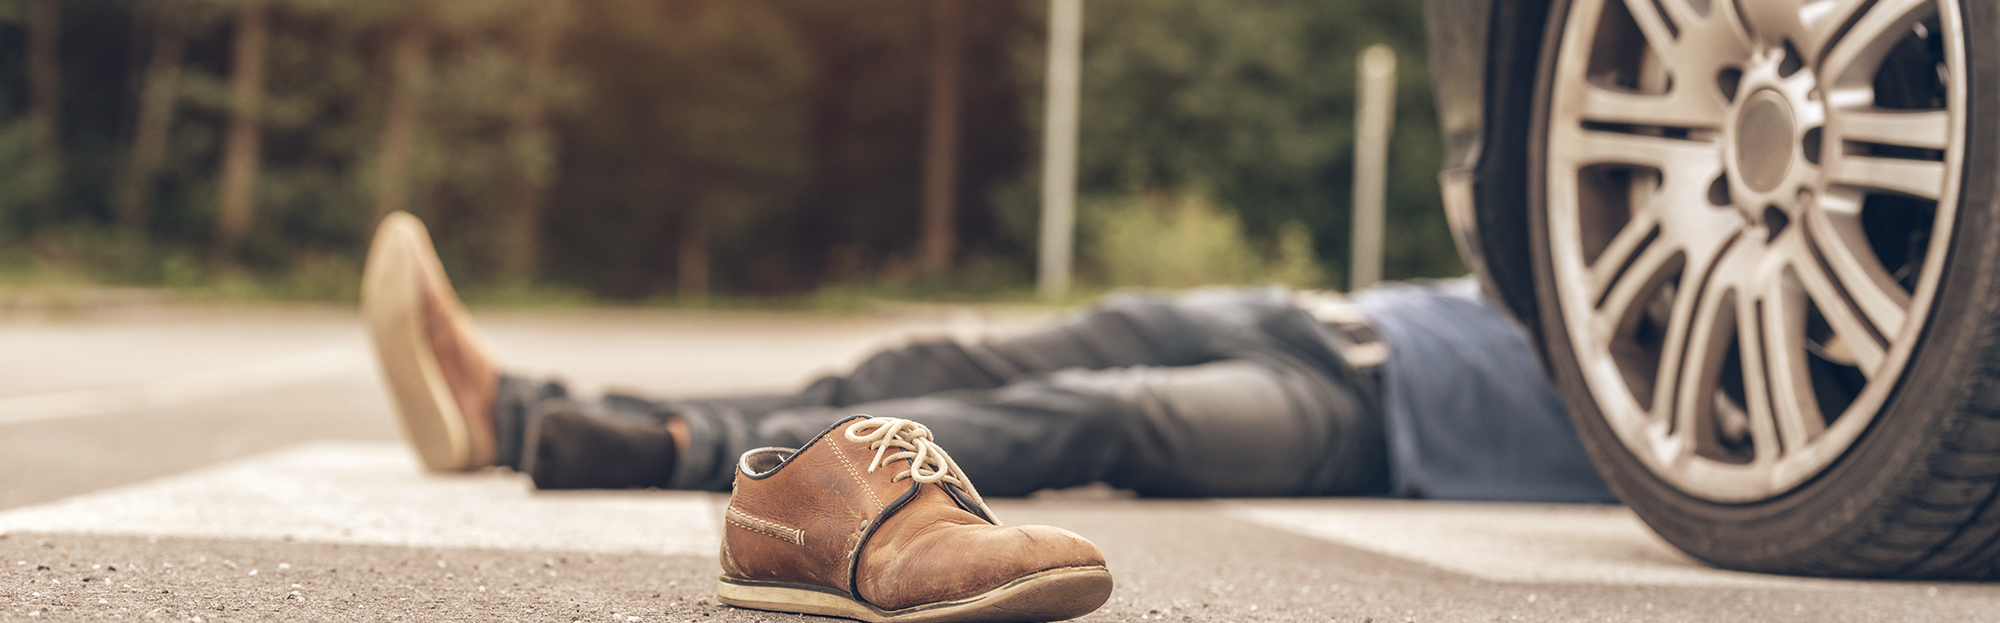 Pedestrian lies on the street after being struck by a car.